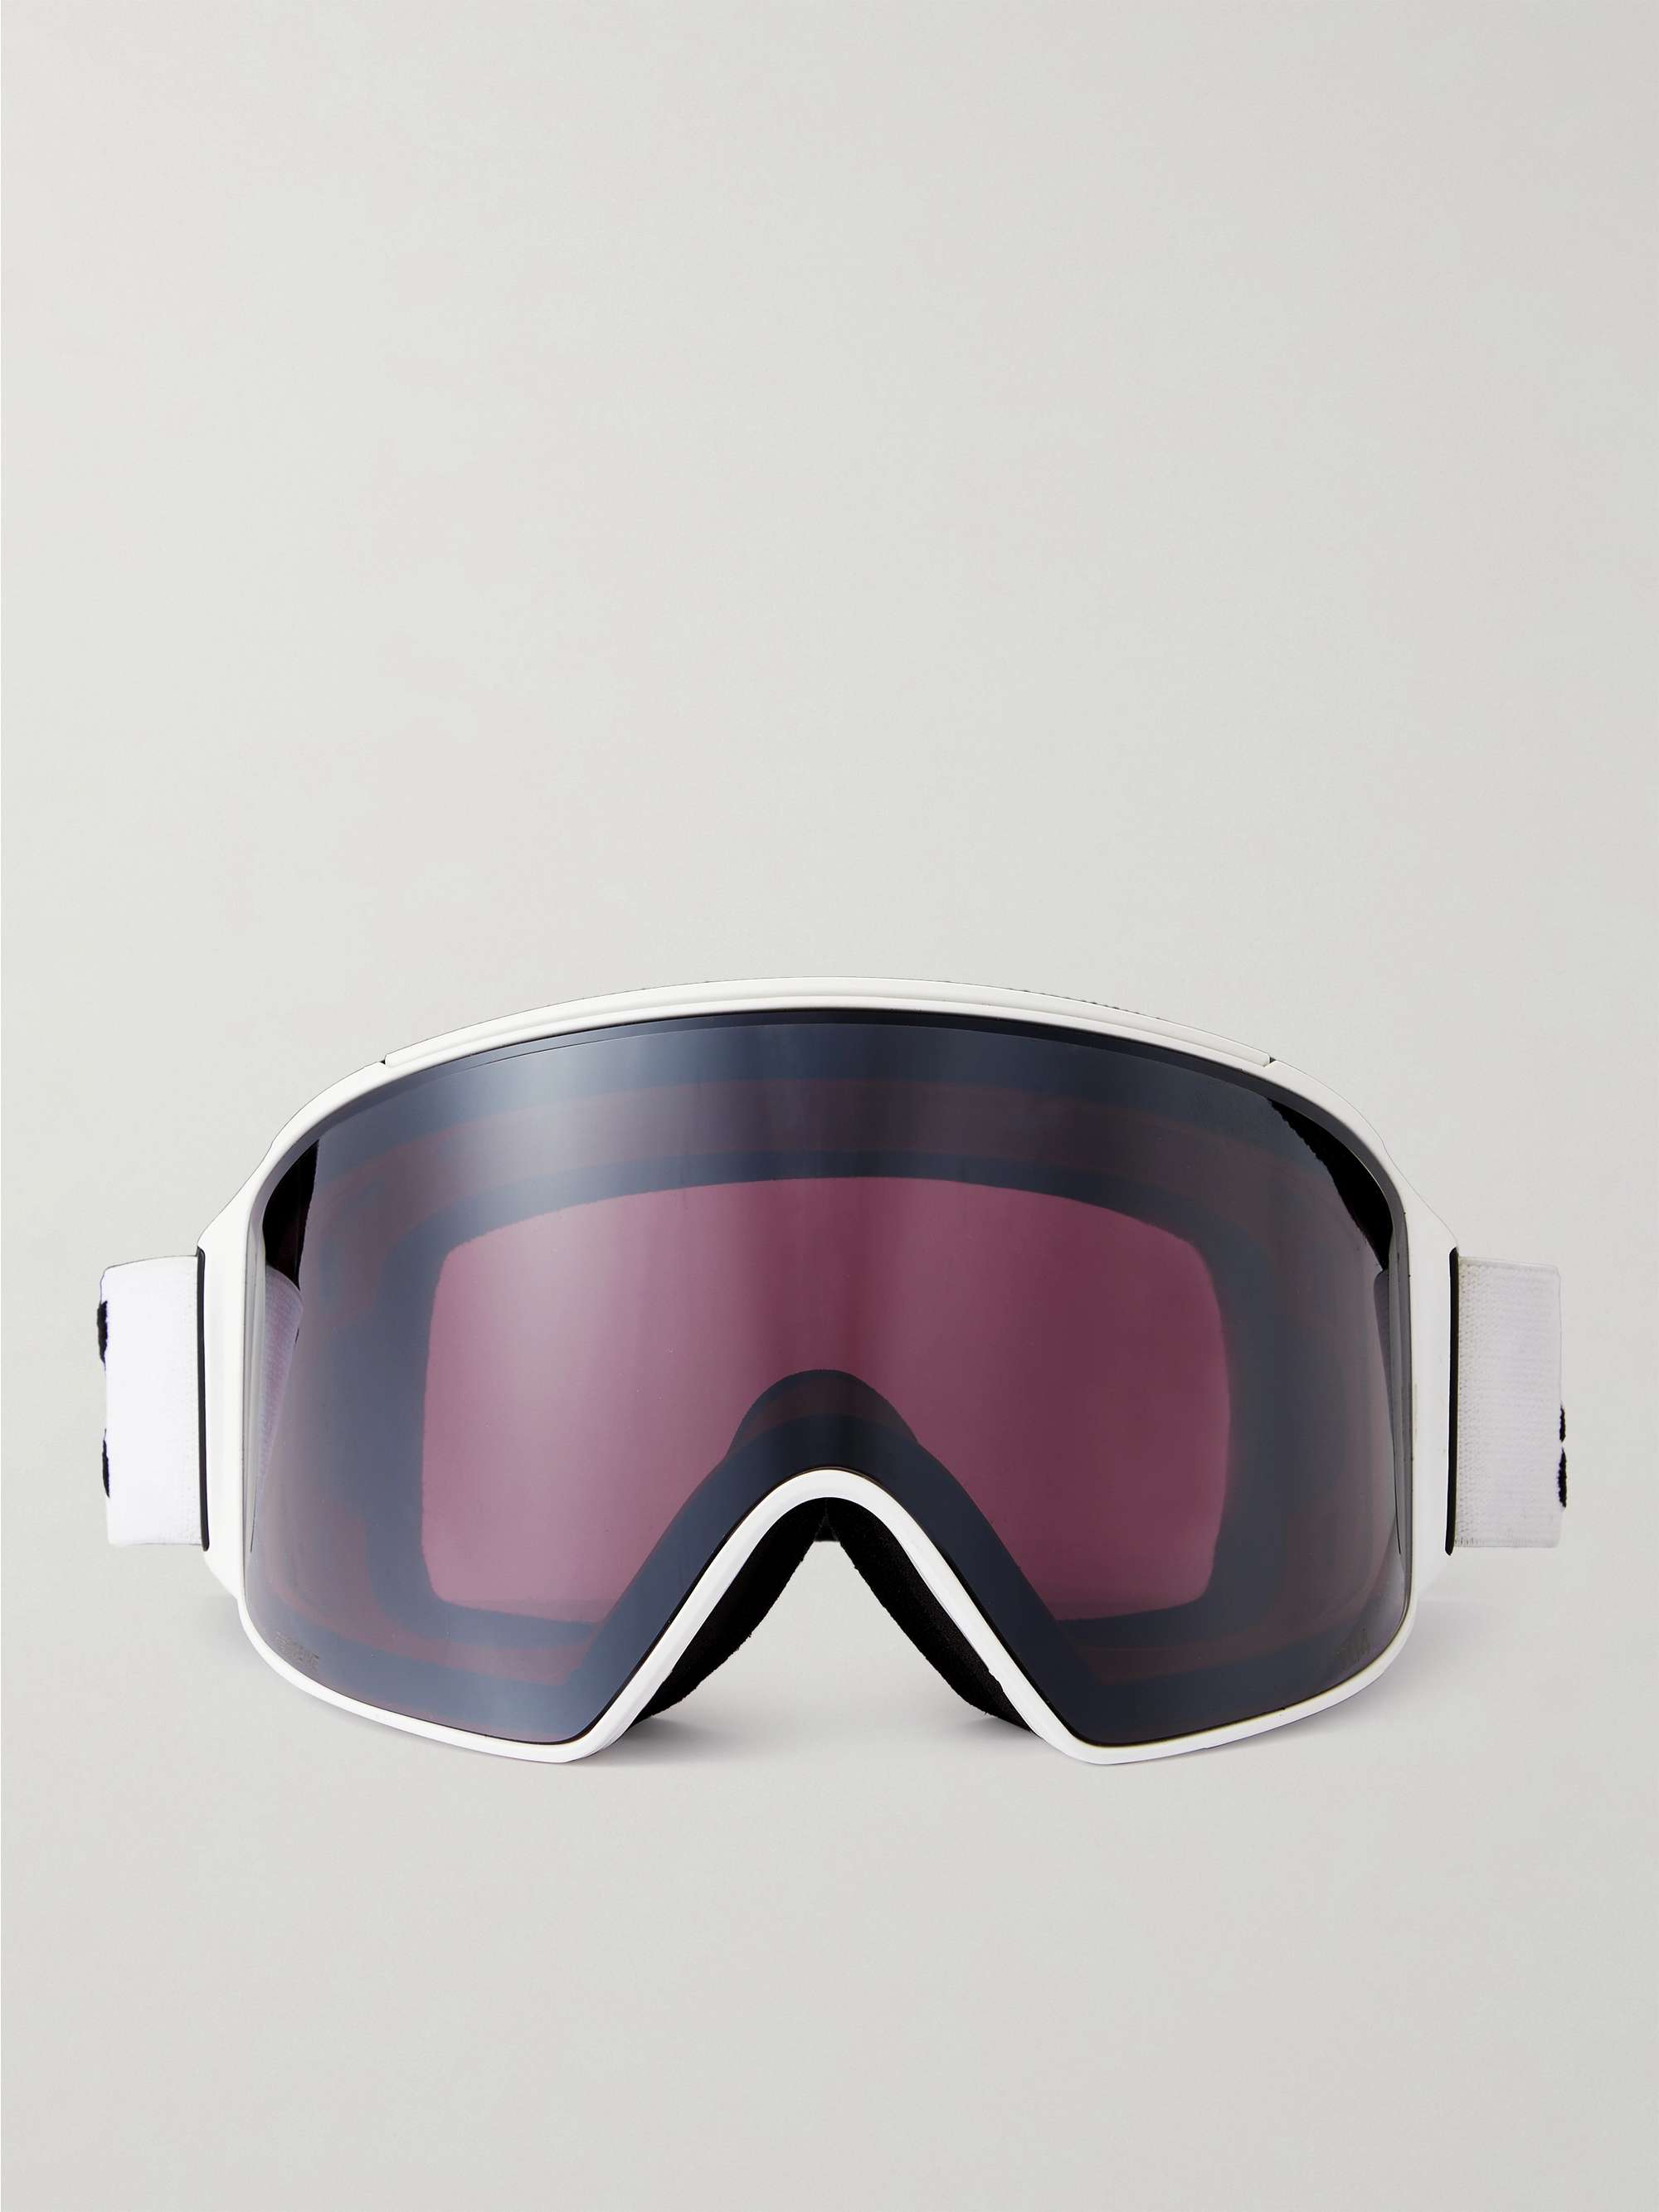 Terrabeam S2 Ski Goggles